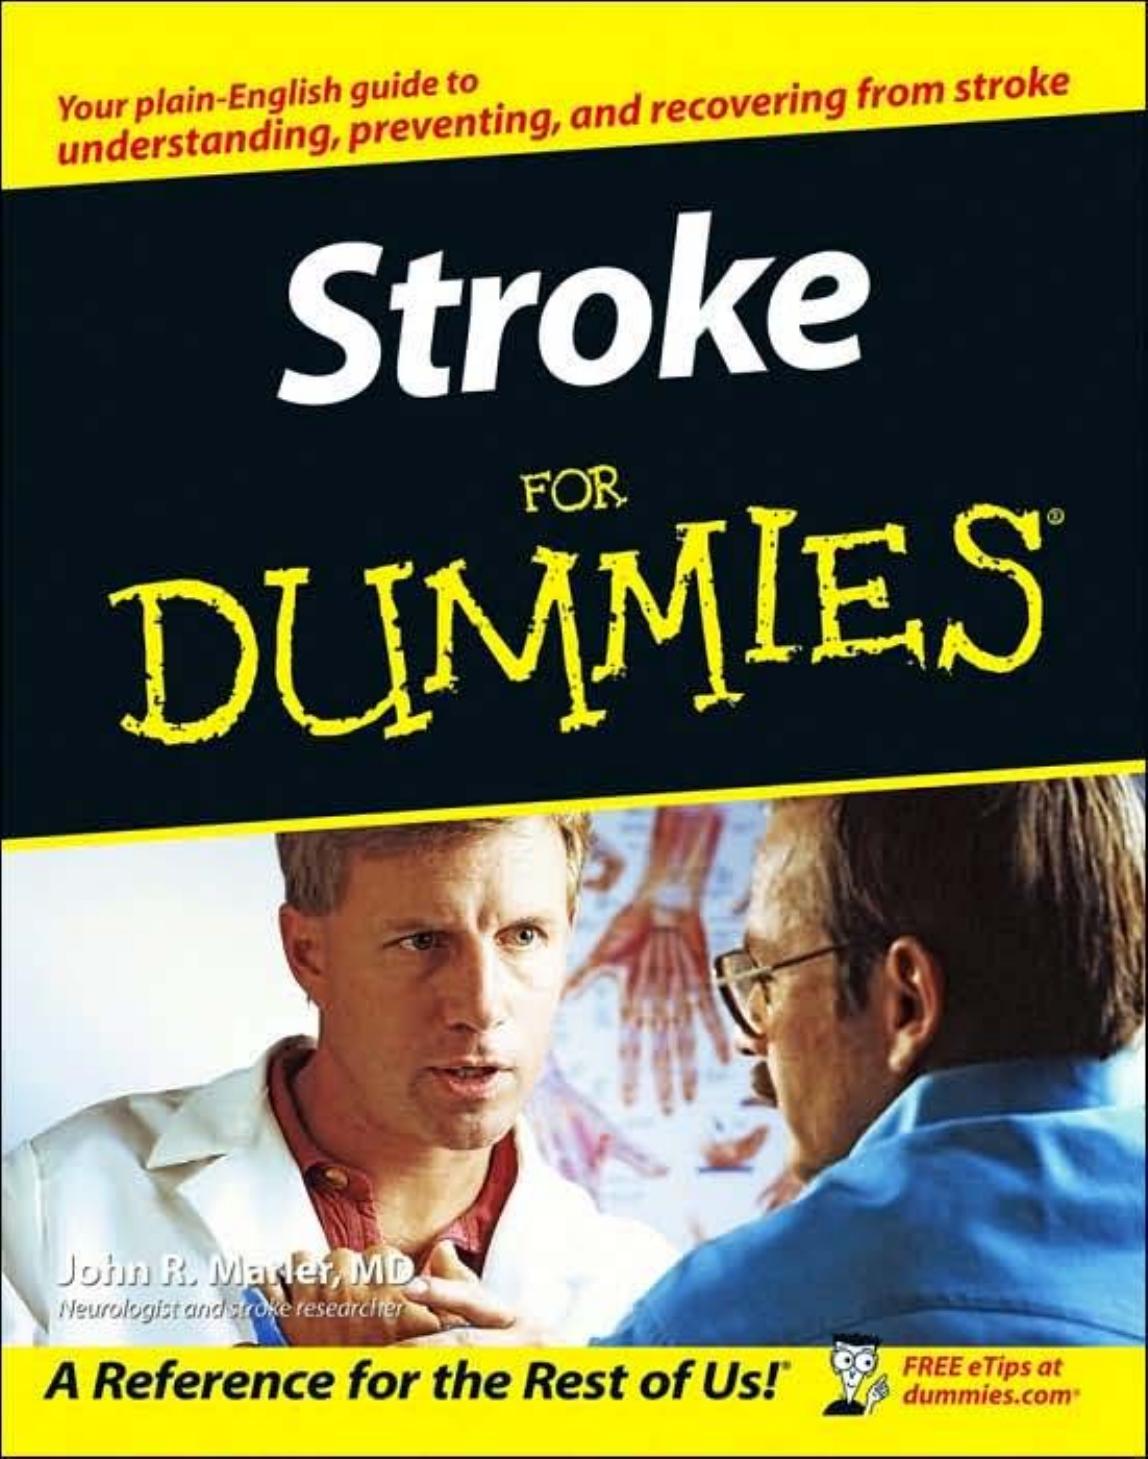 Stroke For Dummies by John R. Marler